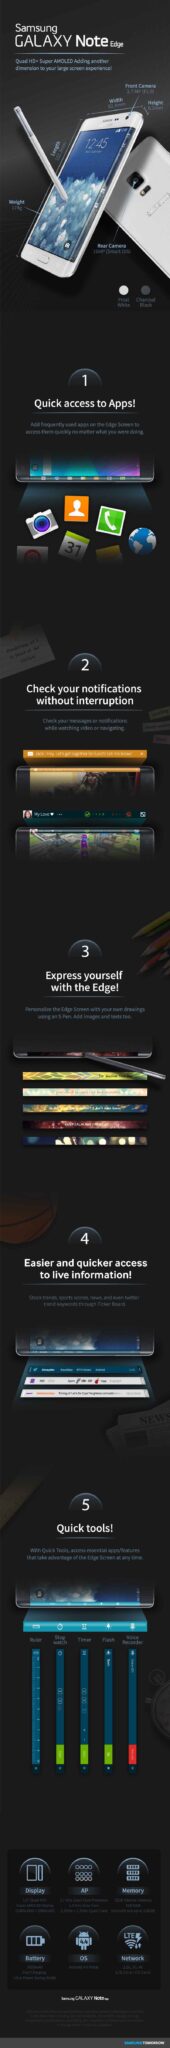 galaxy note edge, Les 2 écrans du Galaxy Note Edge expliqués en détail